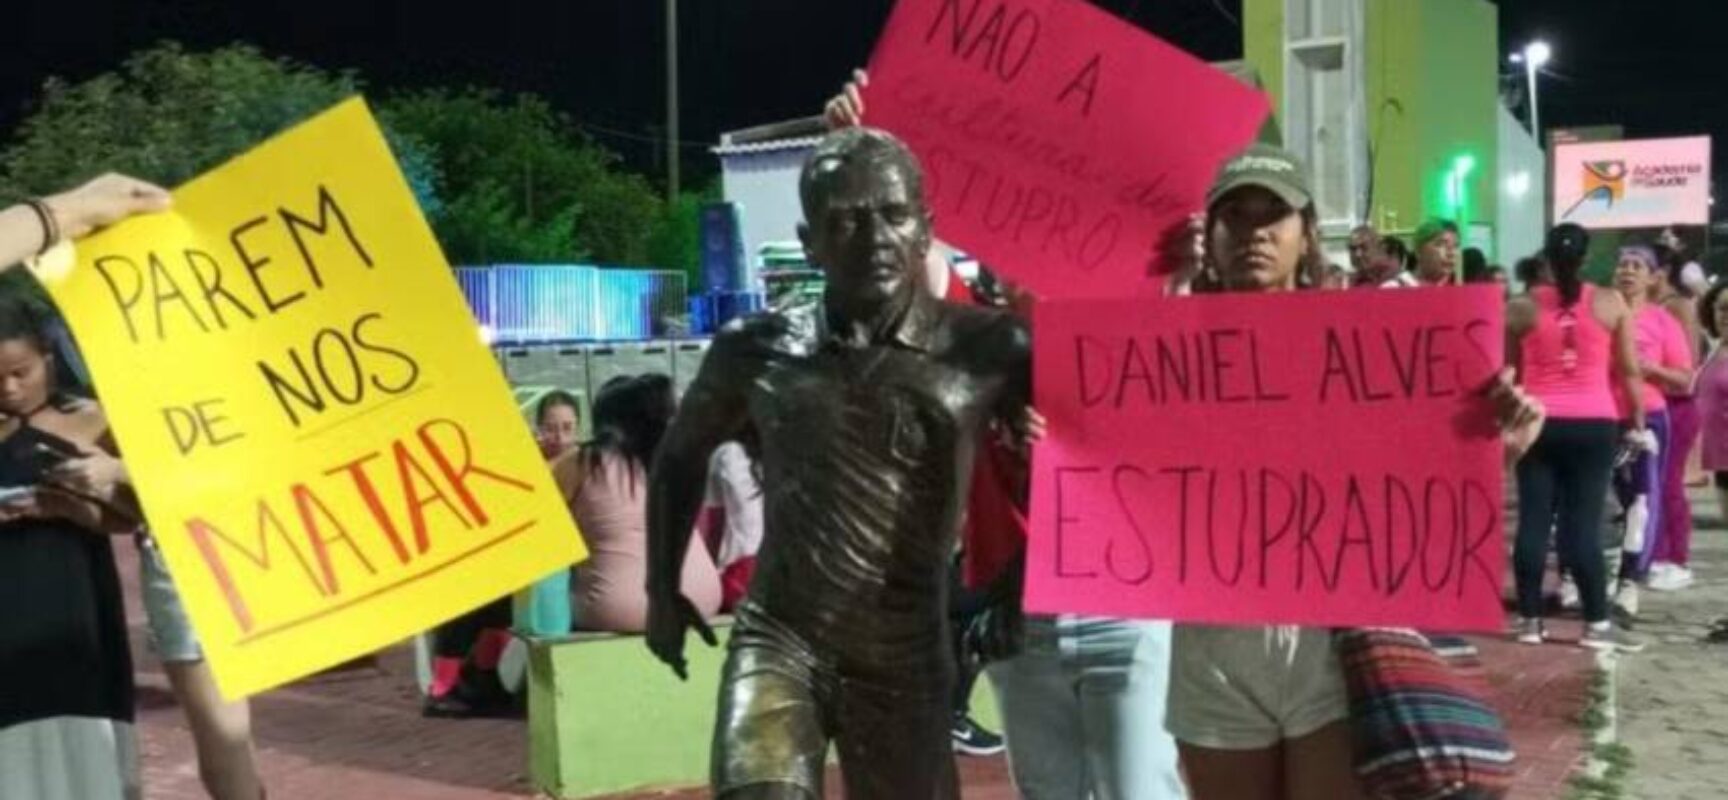 Grupo protesta ao redor de estátua que homenageia Daniel Alves em Juazeiro